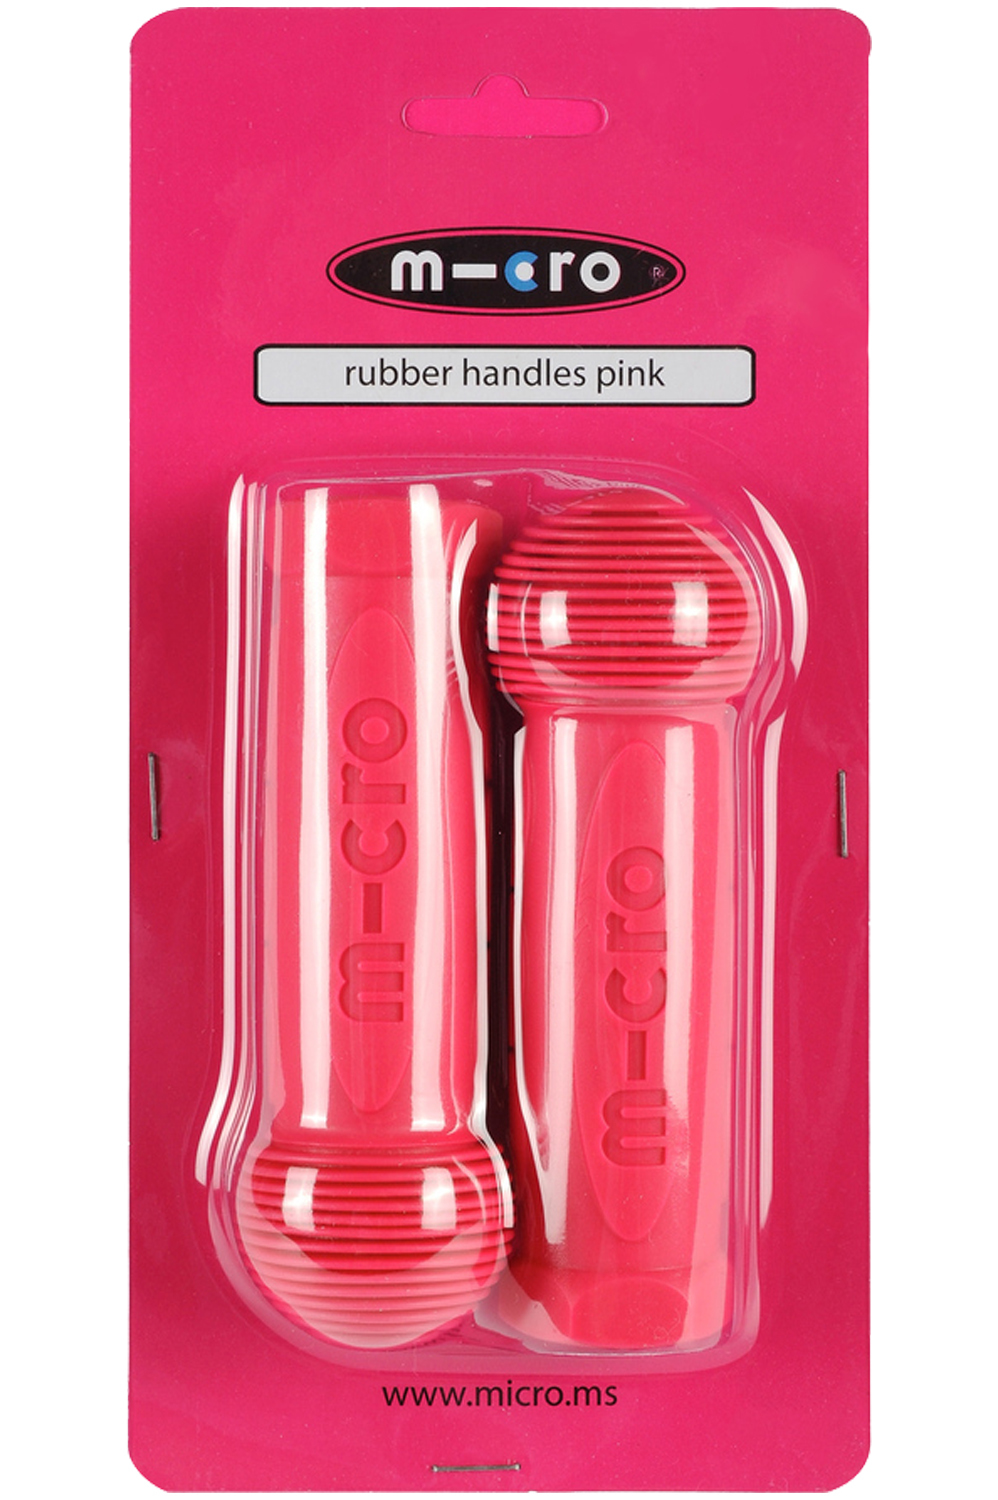 Микро ручка. Грипсы для самоката Micro. Ручки для самоката Micro Mini. Грипсы для самоката Micro Maxi. Ручка на Micro Maxi.